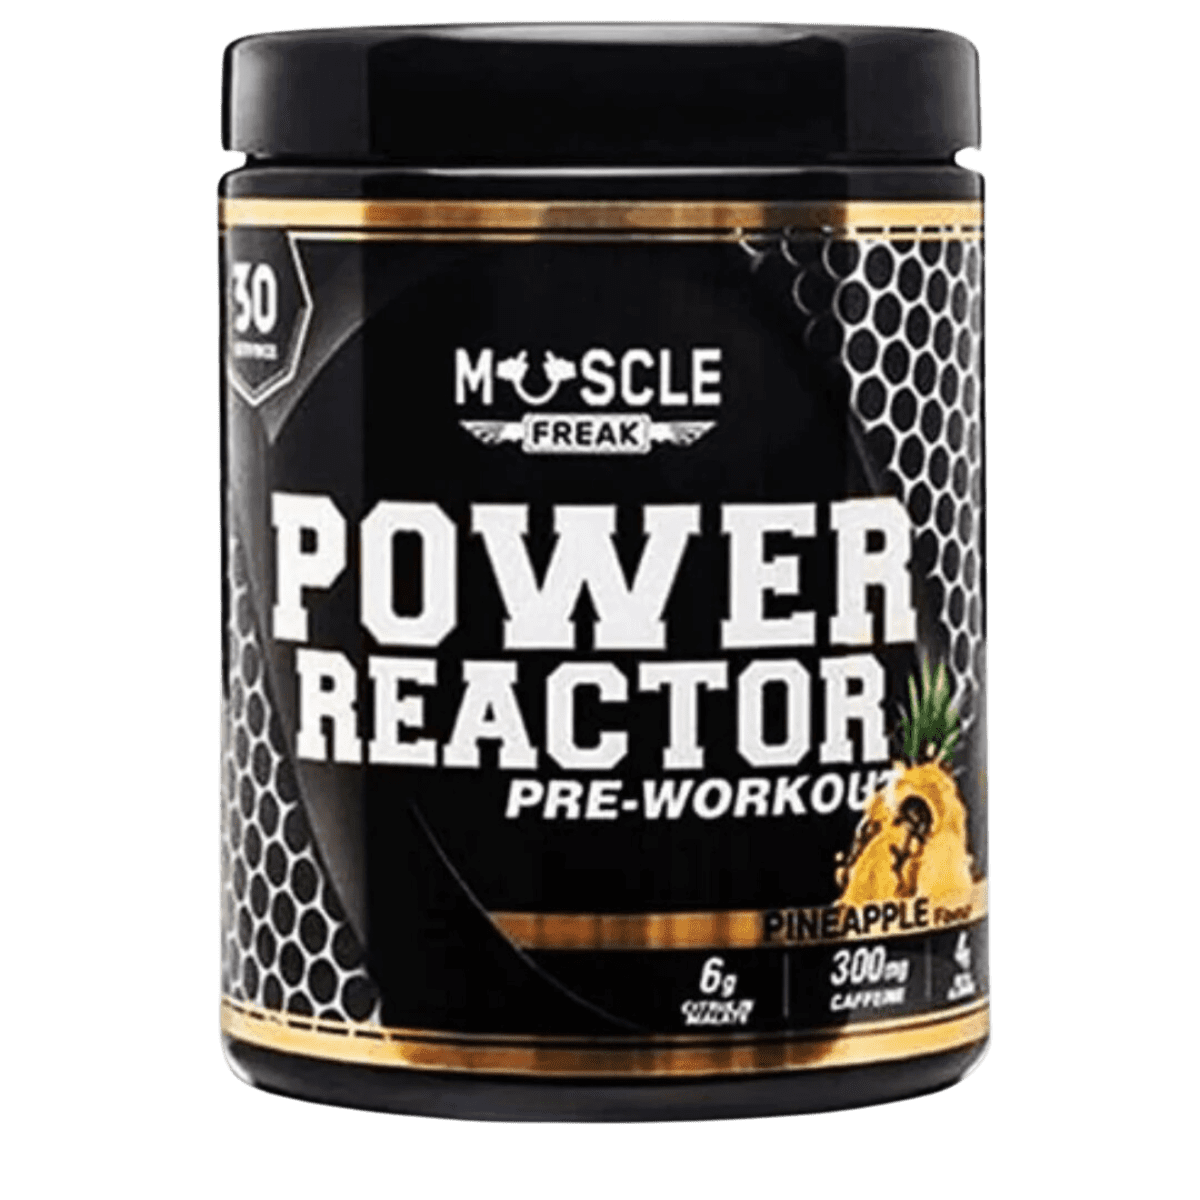 Muscle Freak Power Reactor | Muscle Freak